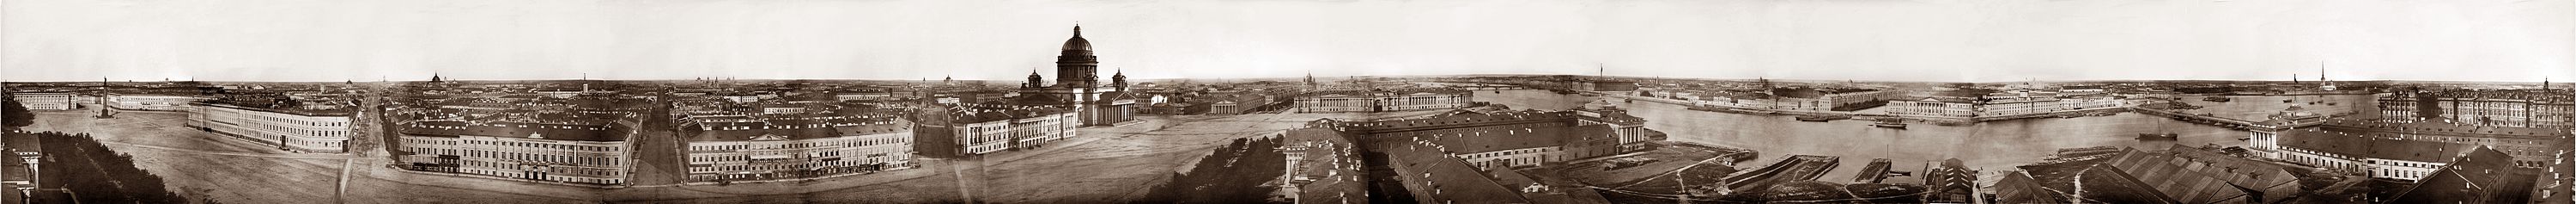 Панорама Санкт-Петербурга из 13 кадров, сделанная с башни Адмиралтейства. 1861 г.